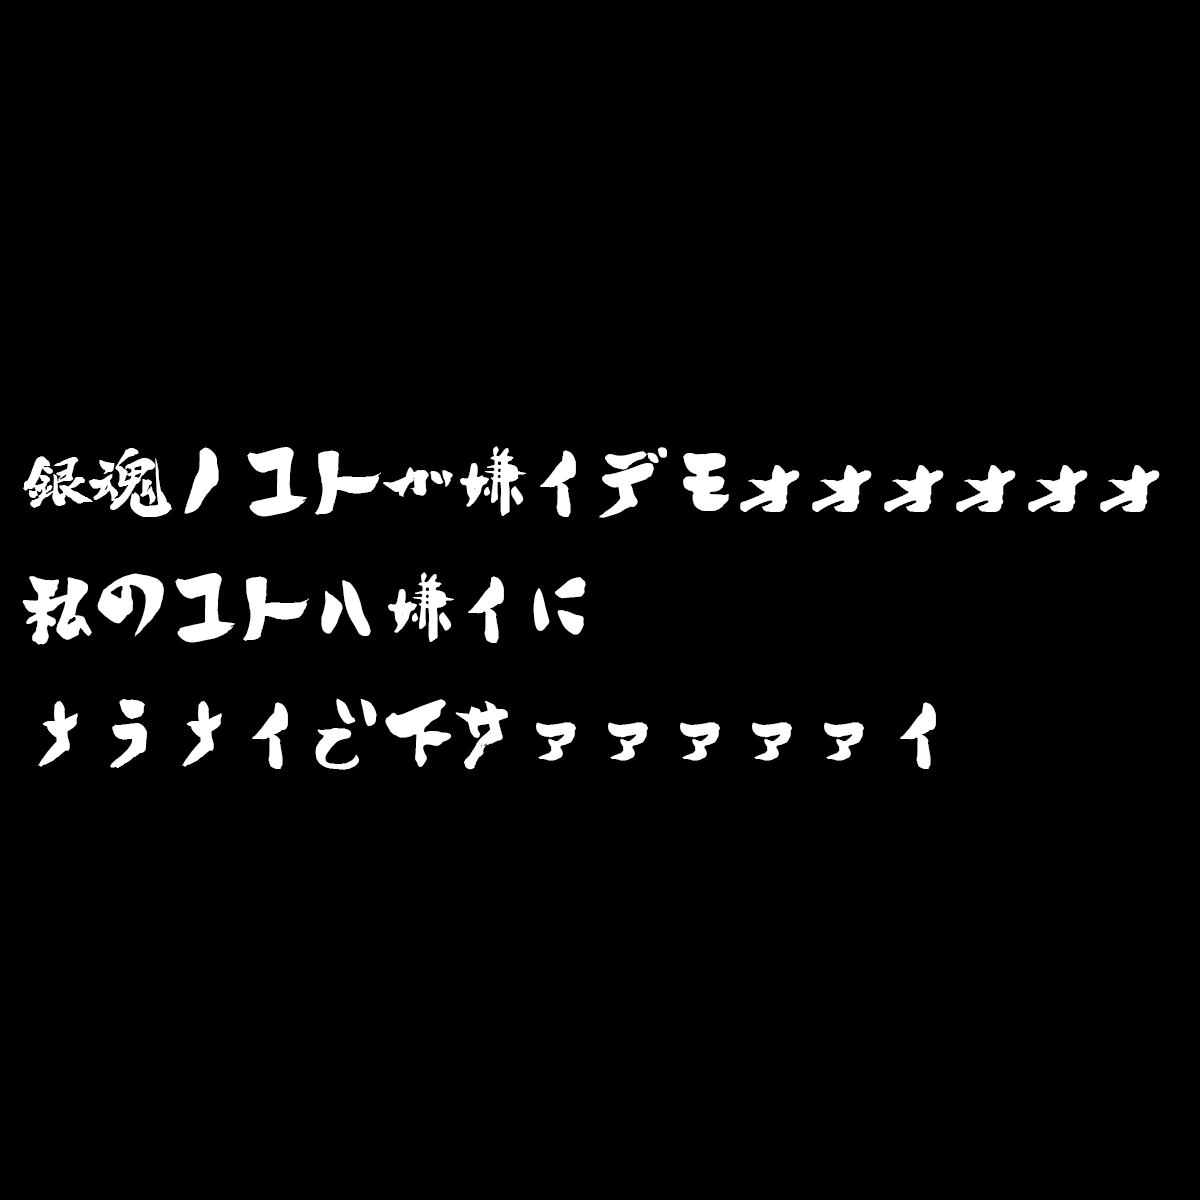 元の銀魂 アニメ タイトルロゴ 最高の壁紙hd